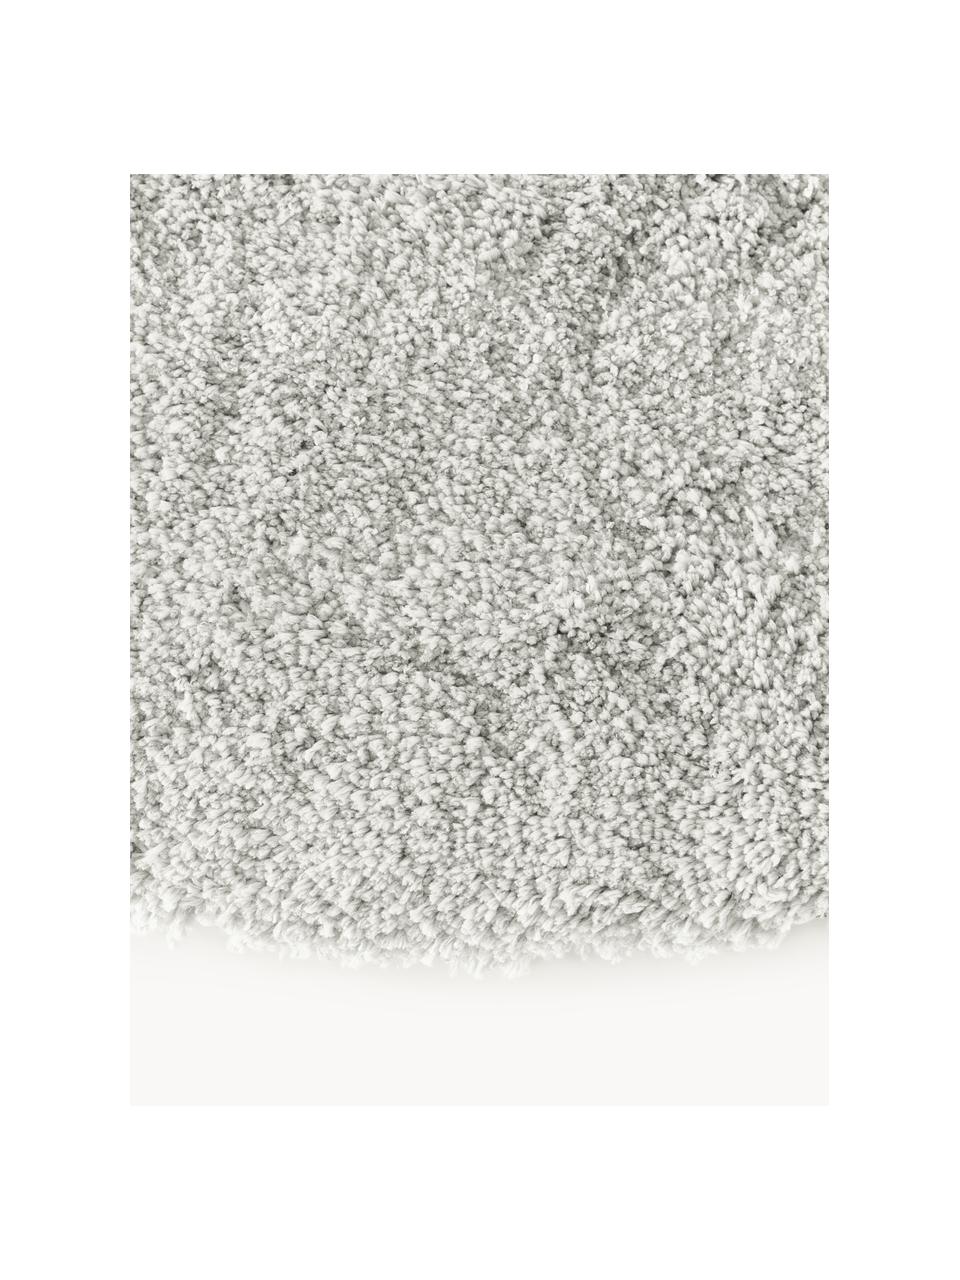 Pluizig rond hoogpolig vloerkleed Leighton, Onderzijde: 70% polyester, 30% katoen, Lichtgrijs, Ø 150 cm (maat M)